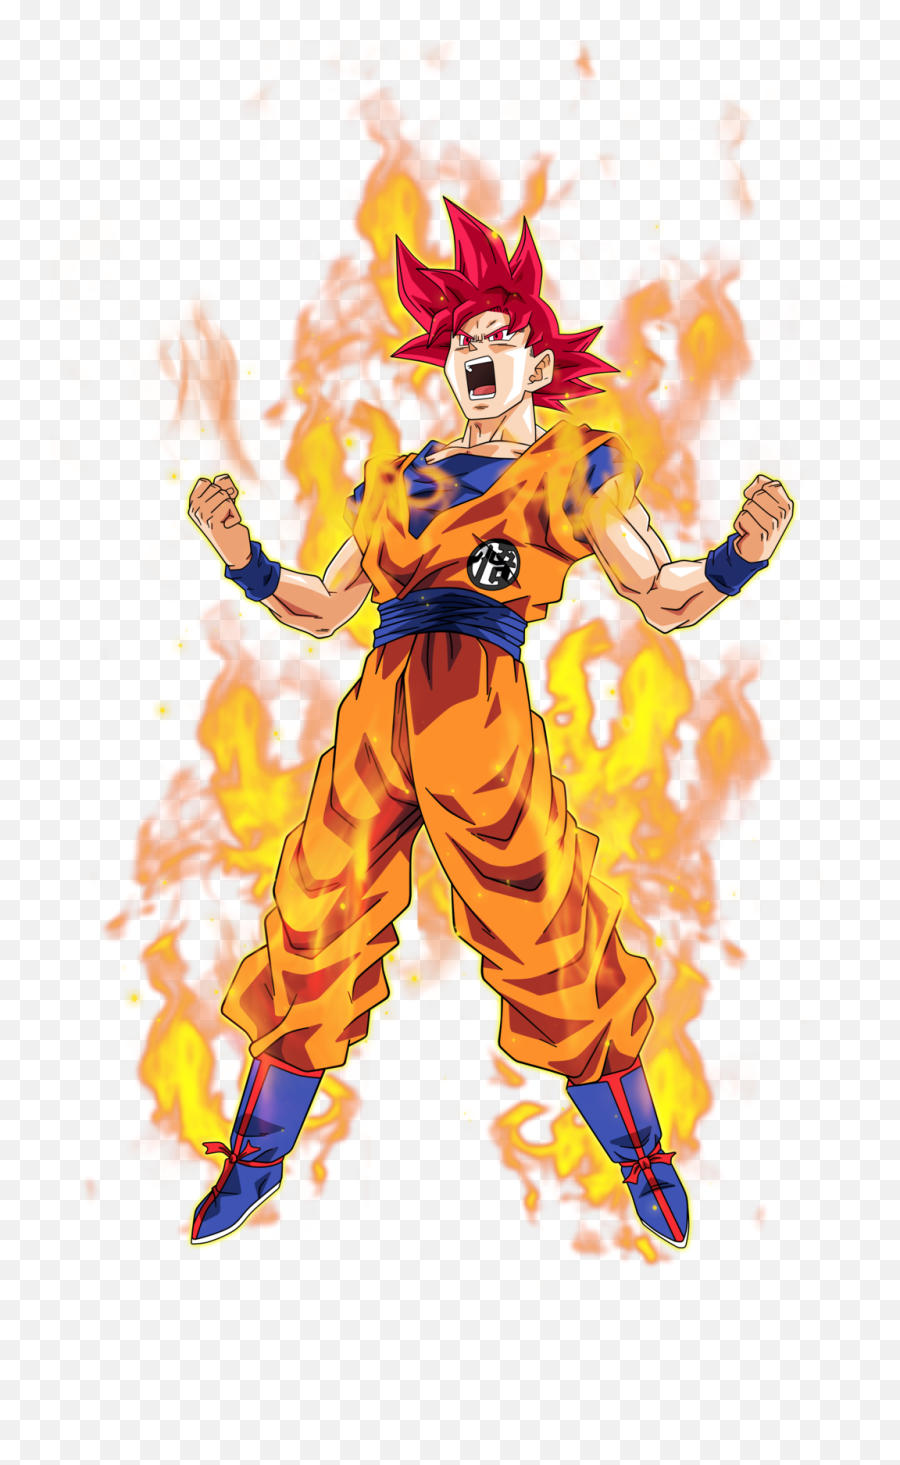 Goku Super Saiyan God Pics - Goku Super Saiyajin Dios Son Goku Ssj God Png,Dios Png